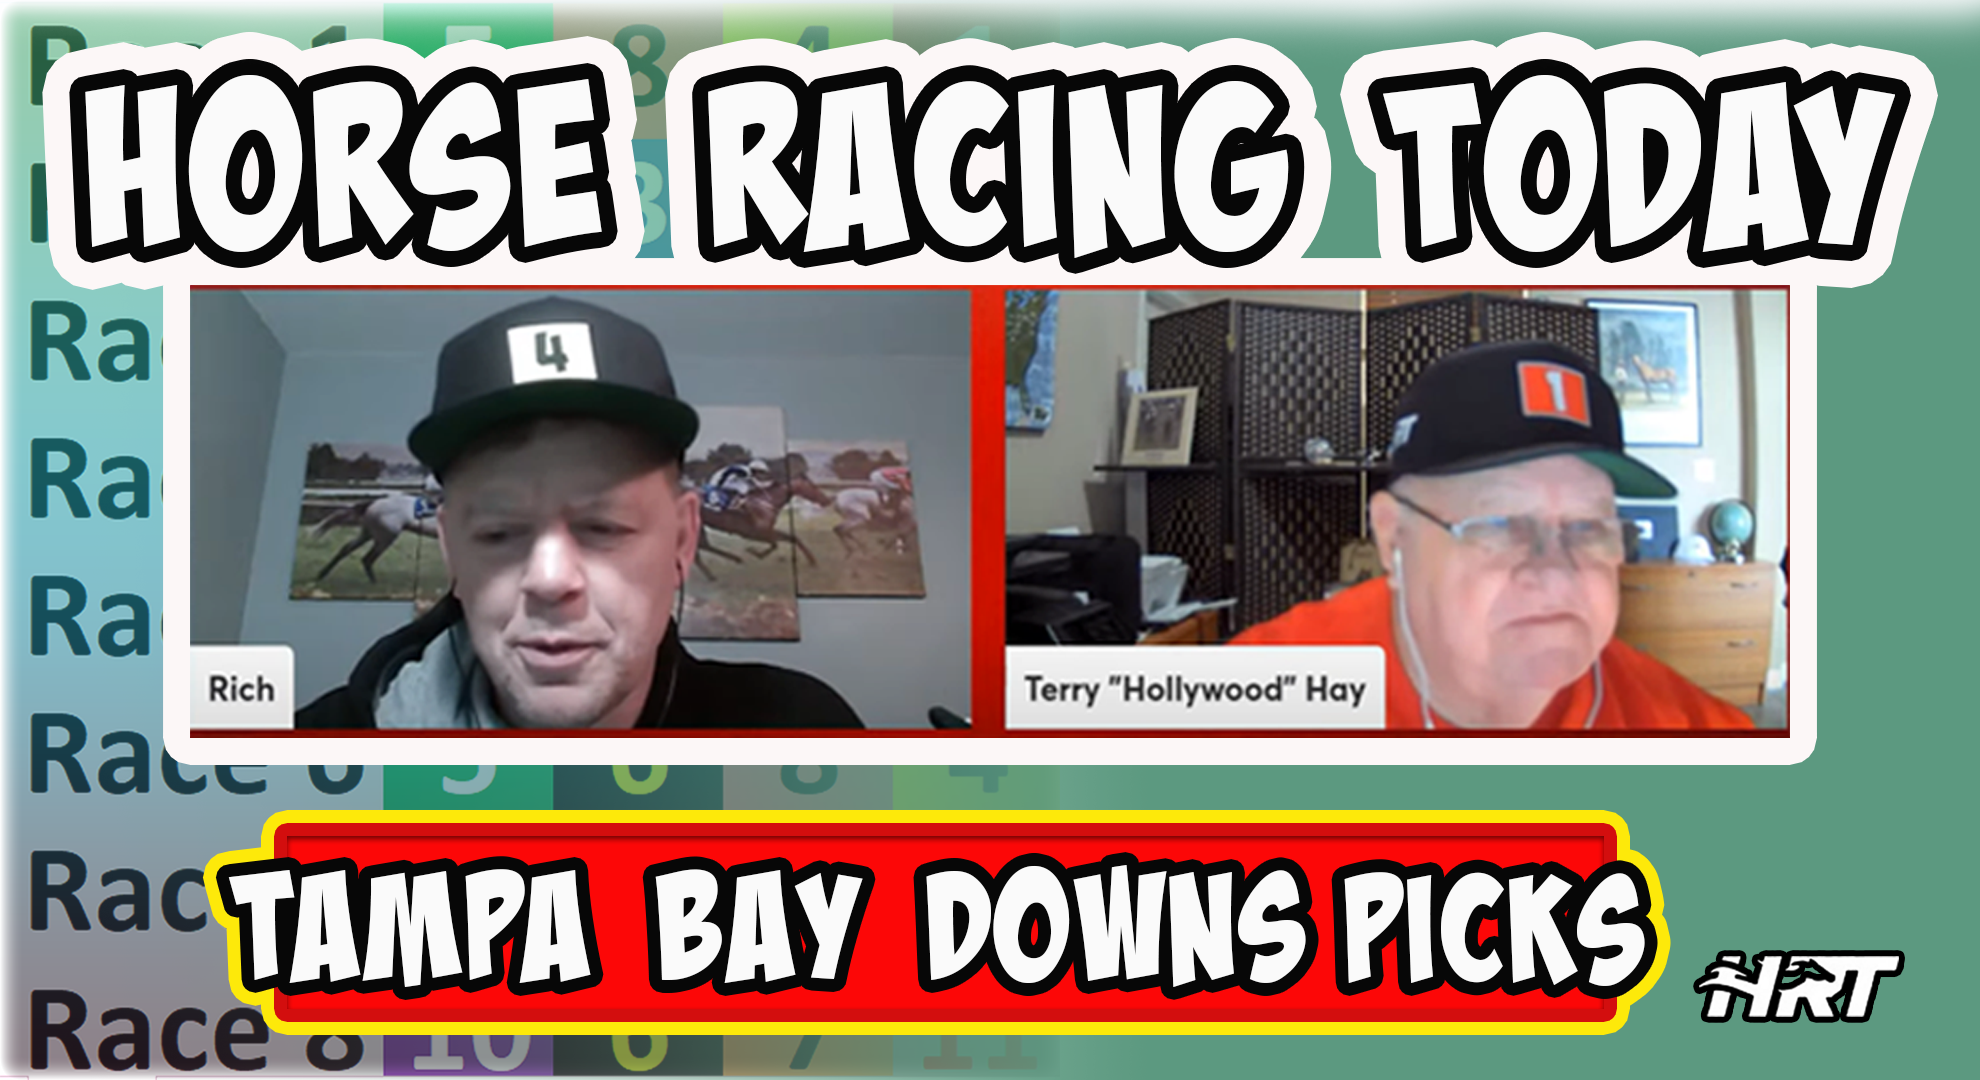 Tampa Bay Downs Horse Racing Picks